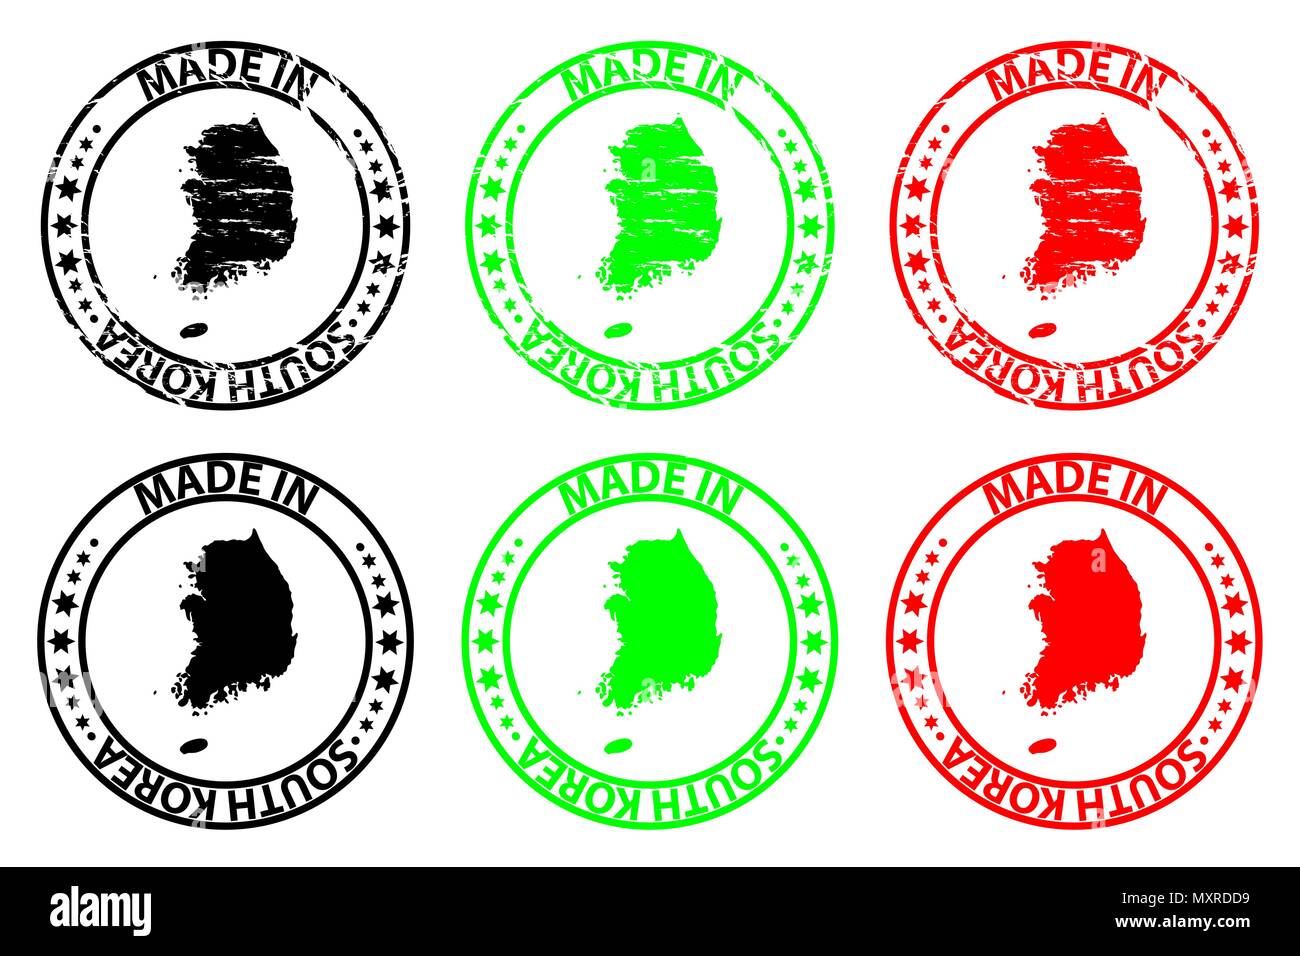 Faites en Corée du Sud - timbres en caoutchouc - vecteur, République de Corée - carte noir, vert et rouge Illustration de Vecteur